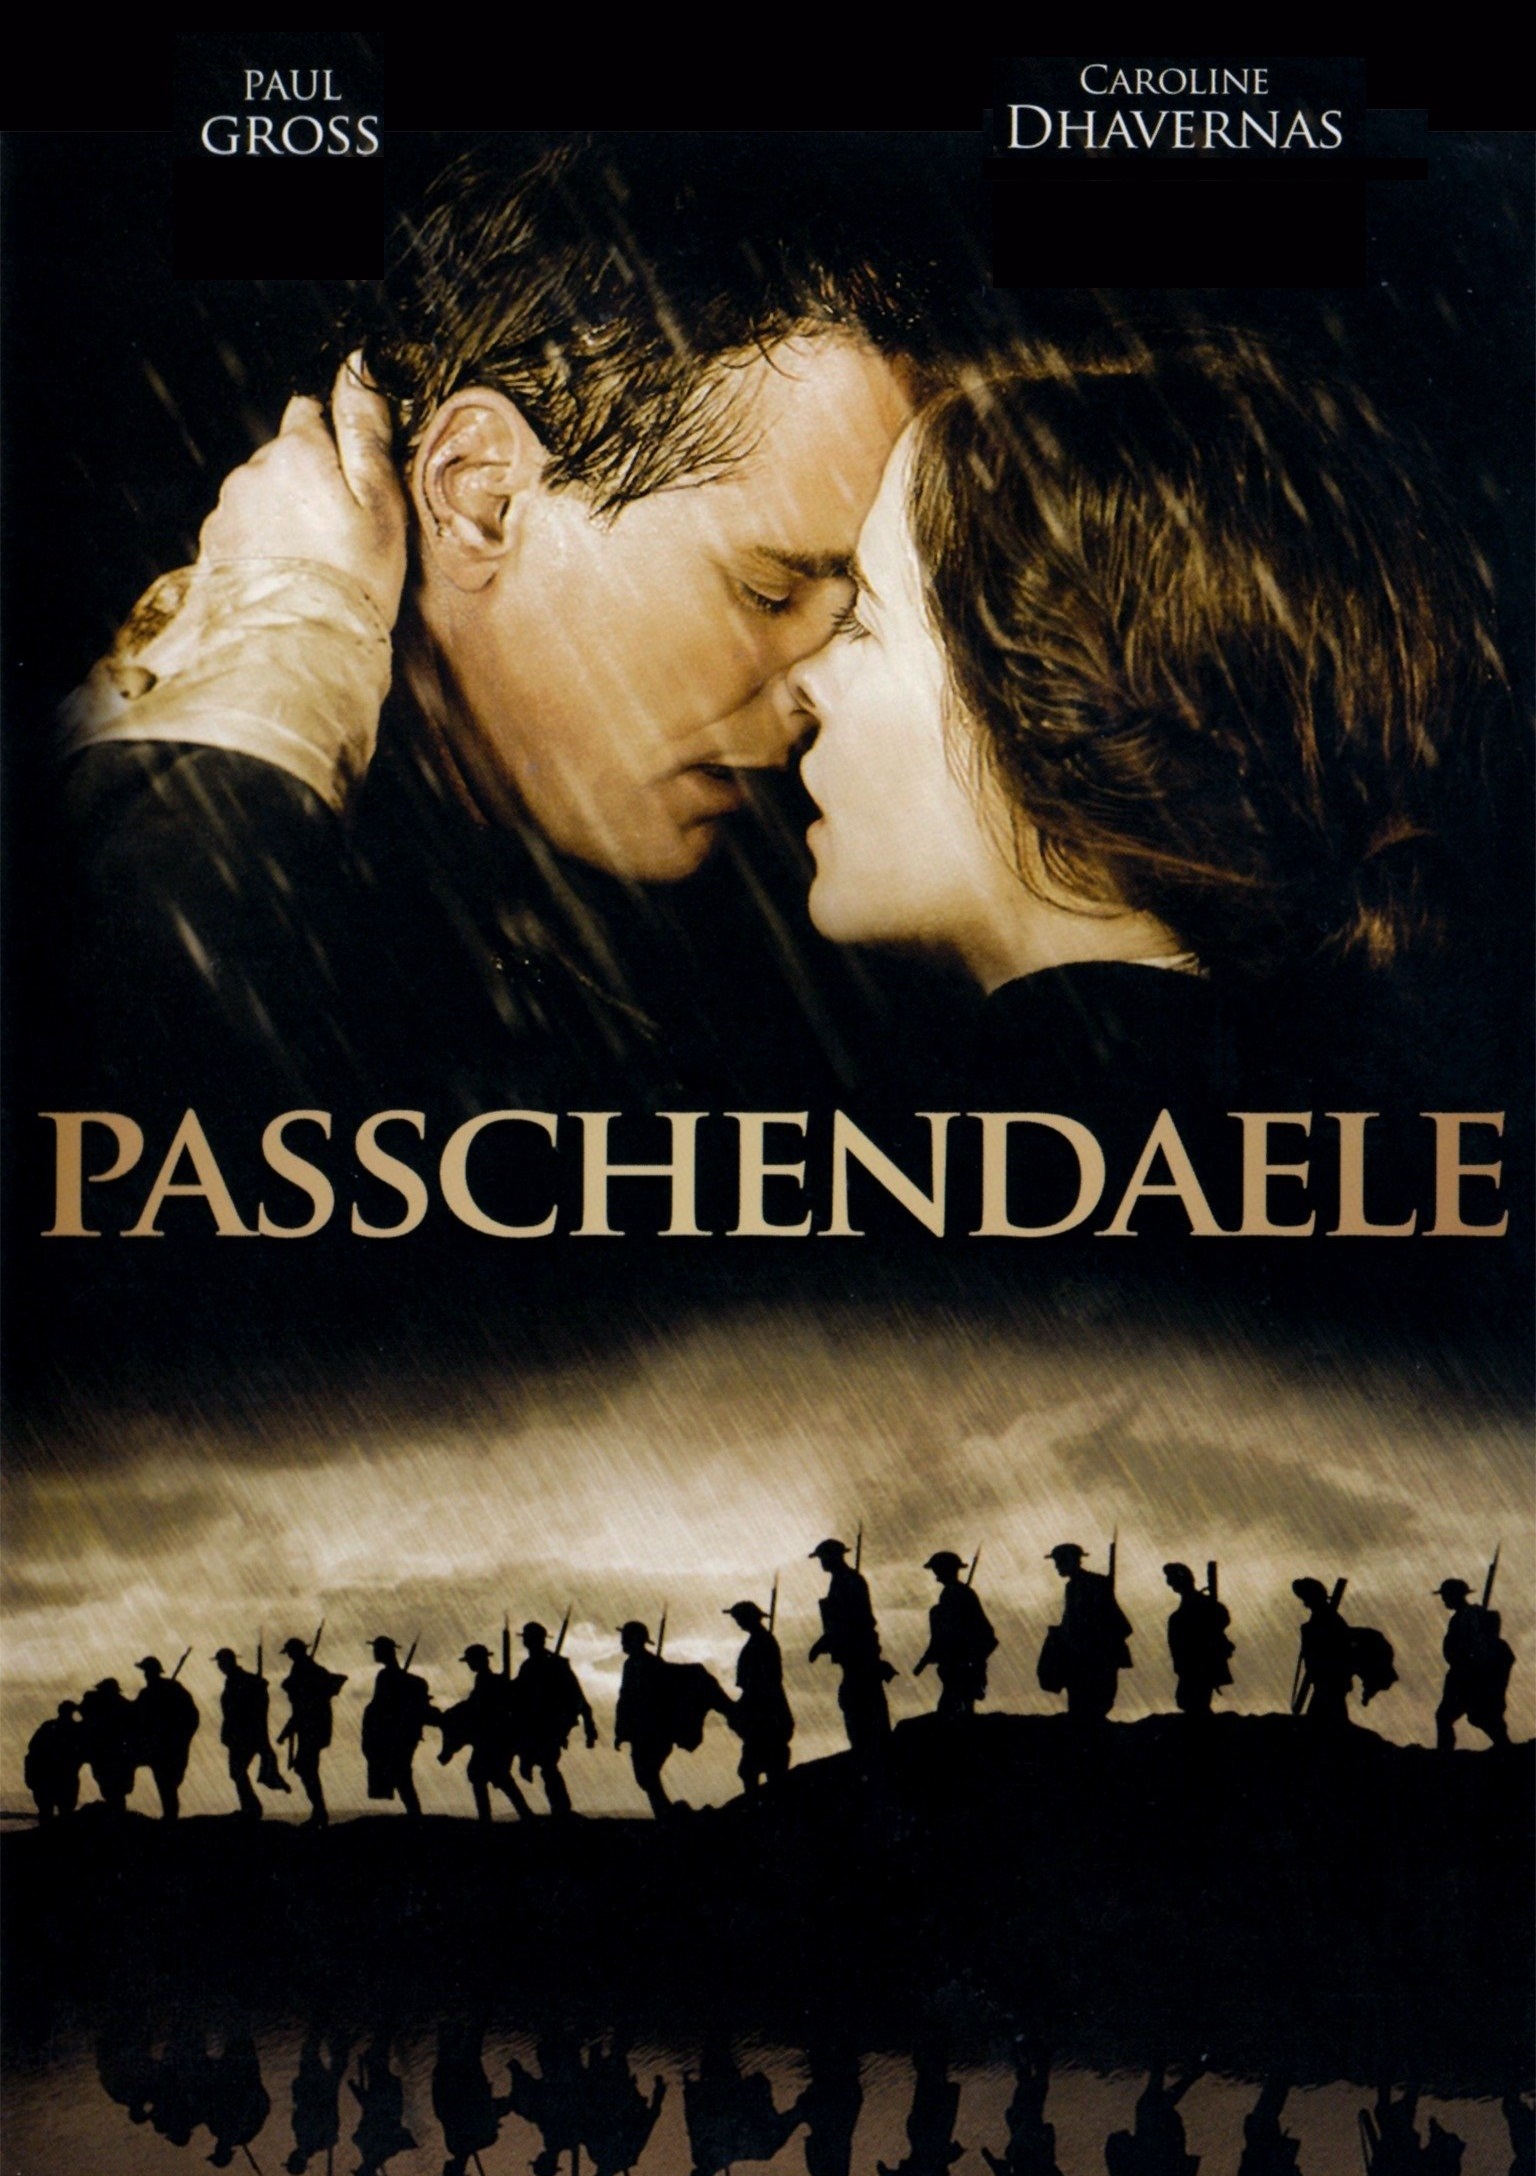 Passchendaele [Sub-ITA] (2008)